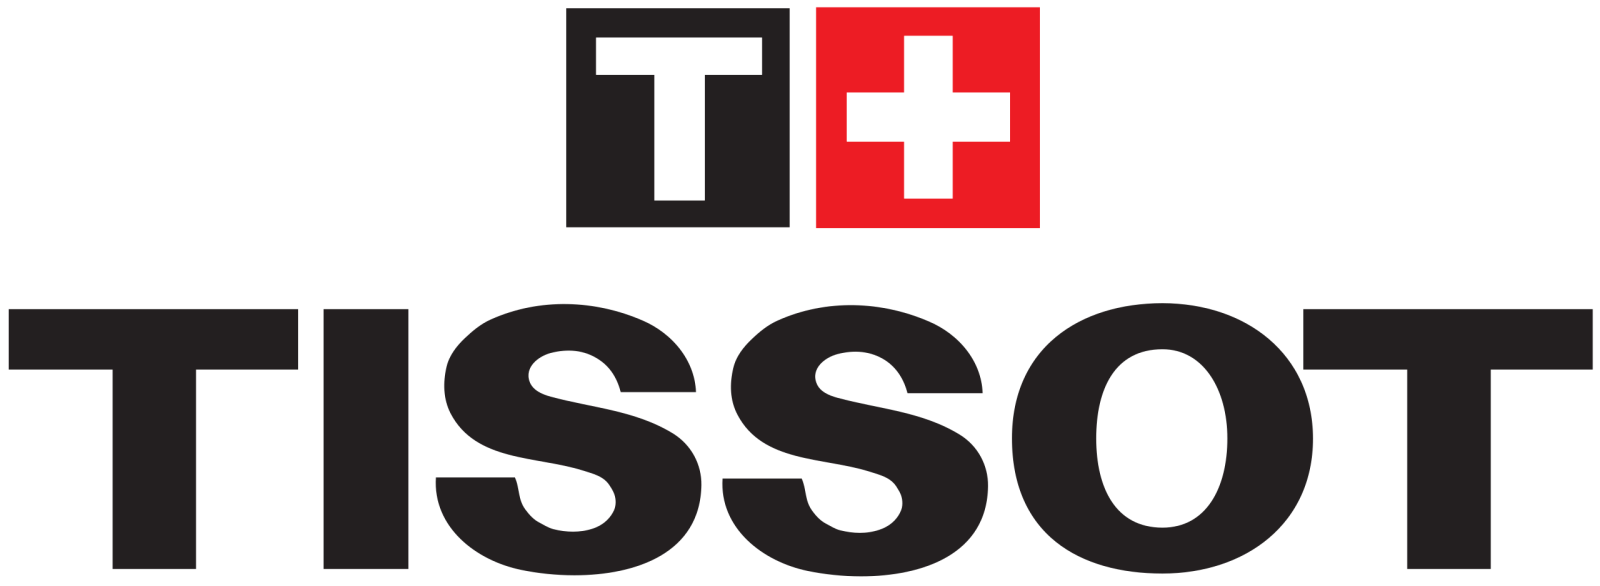 Logo thương hiệu đồng hồ thụy sĩ Tissot 